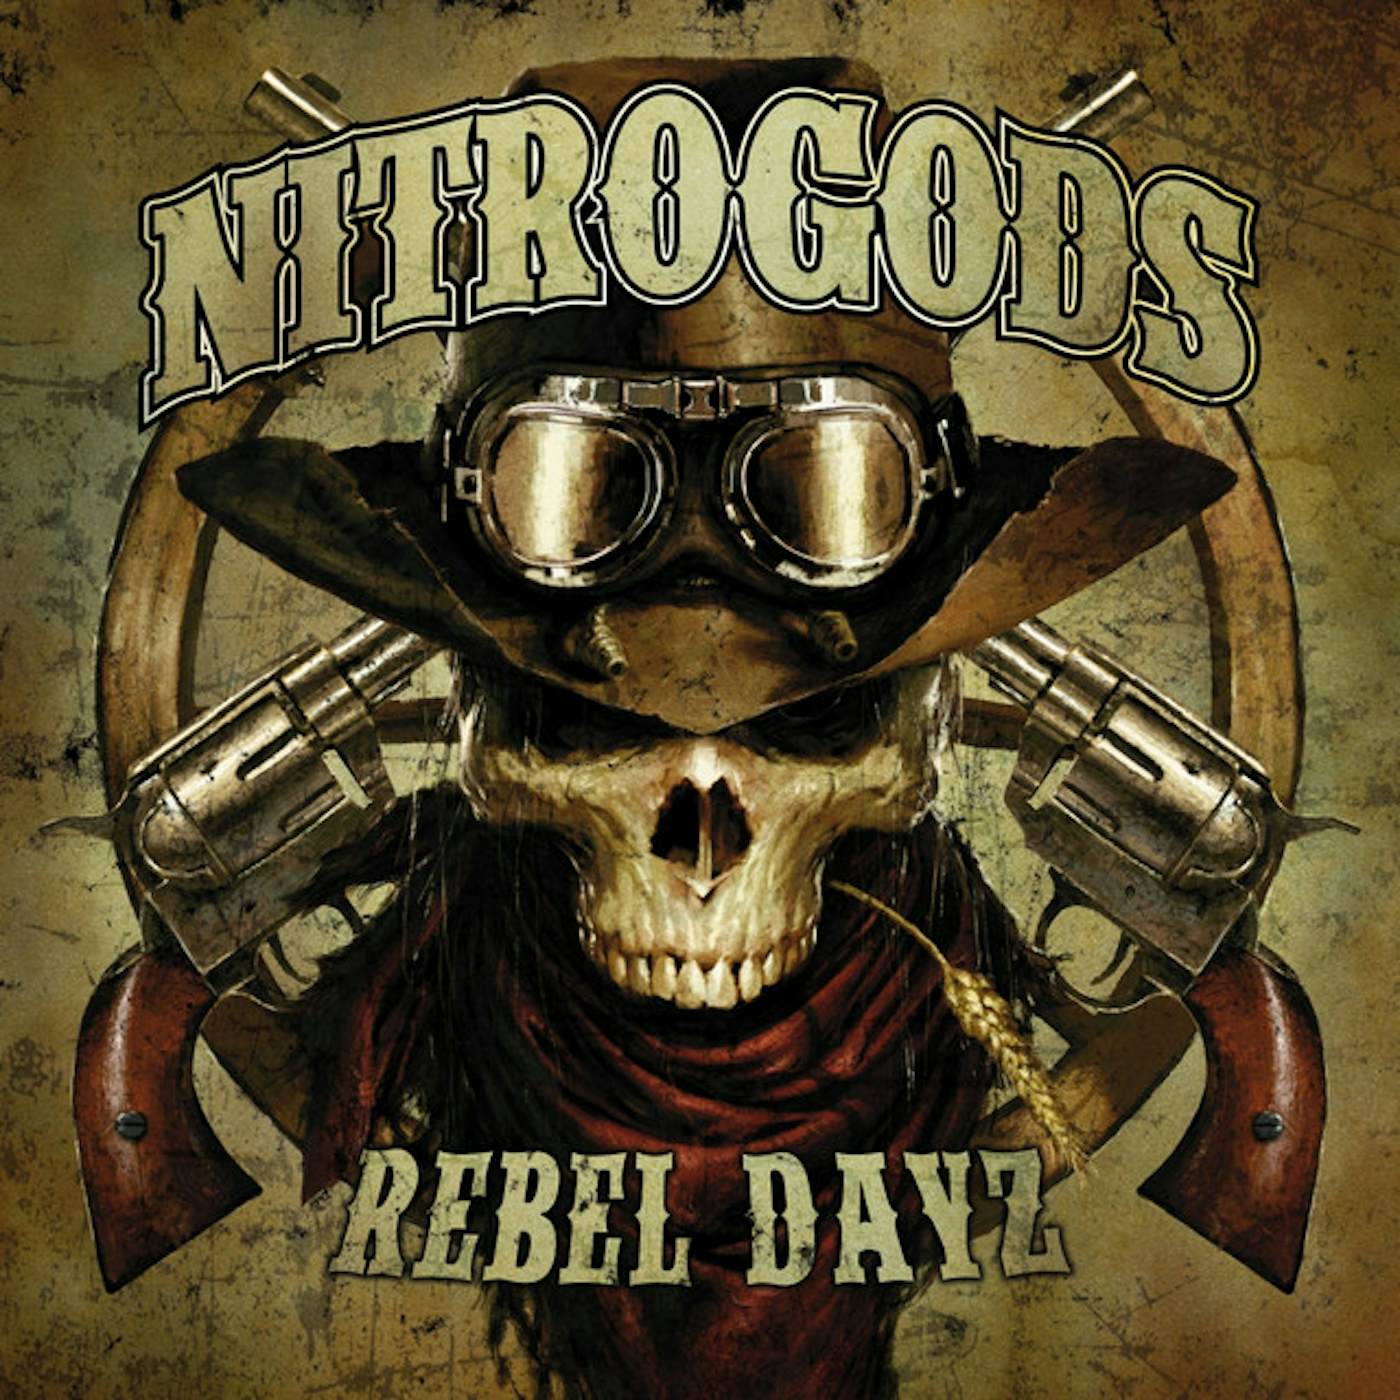 Nitrogods Rebel Dayz Vinyl Record